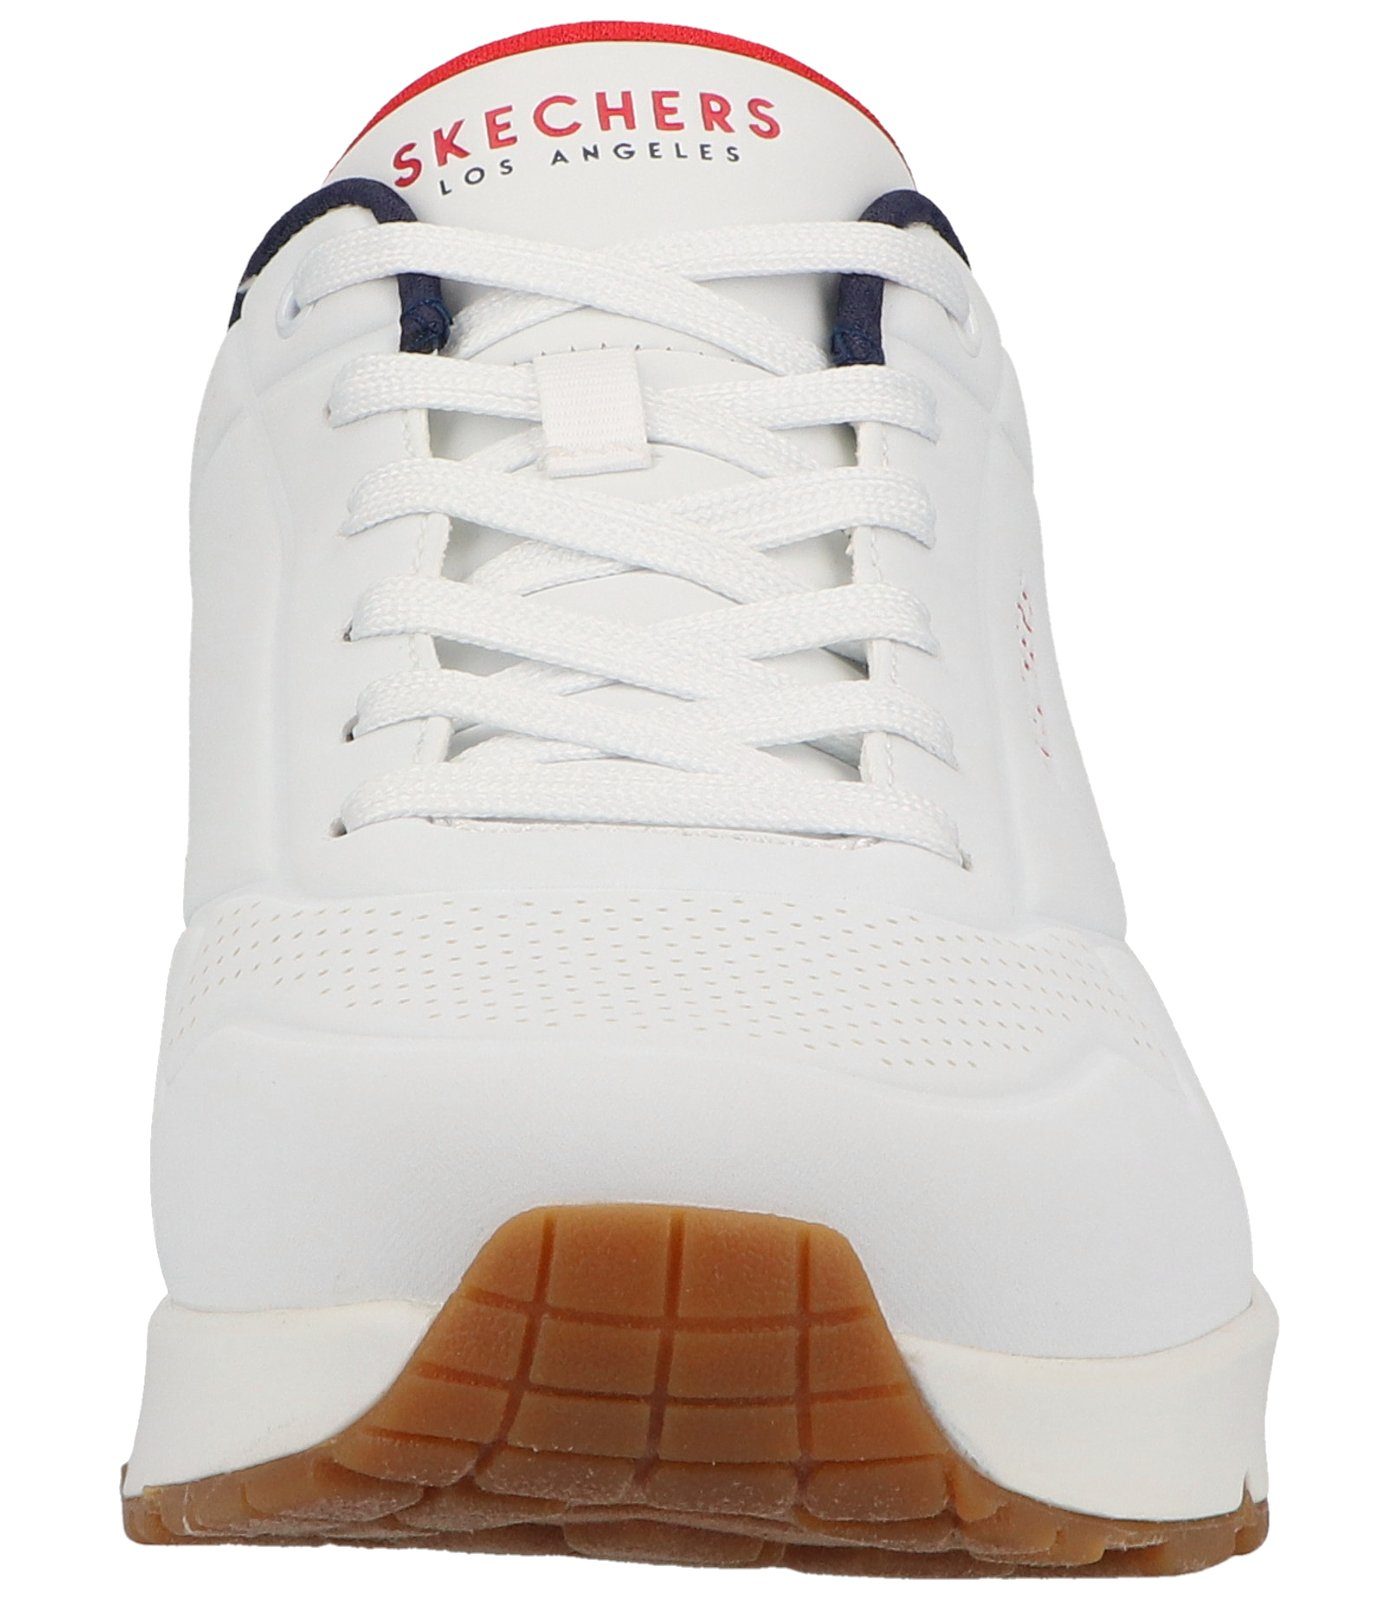 Skechers Sneaker Lederimitat Sneaker white/navy/red